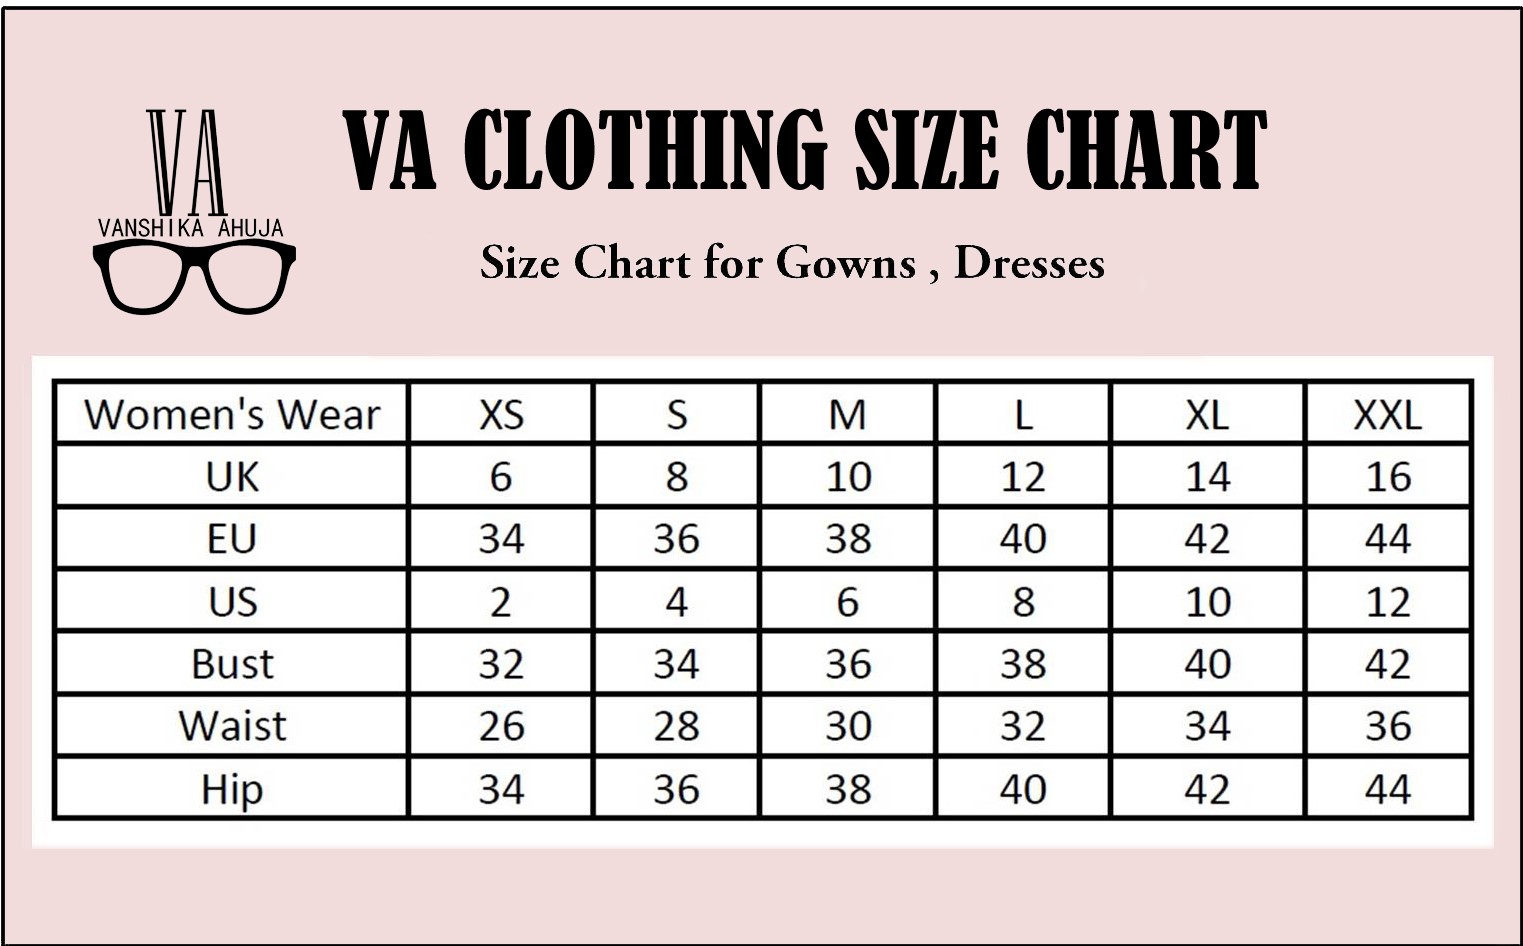 My Dress Size Chart